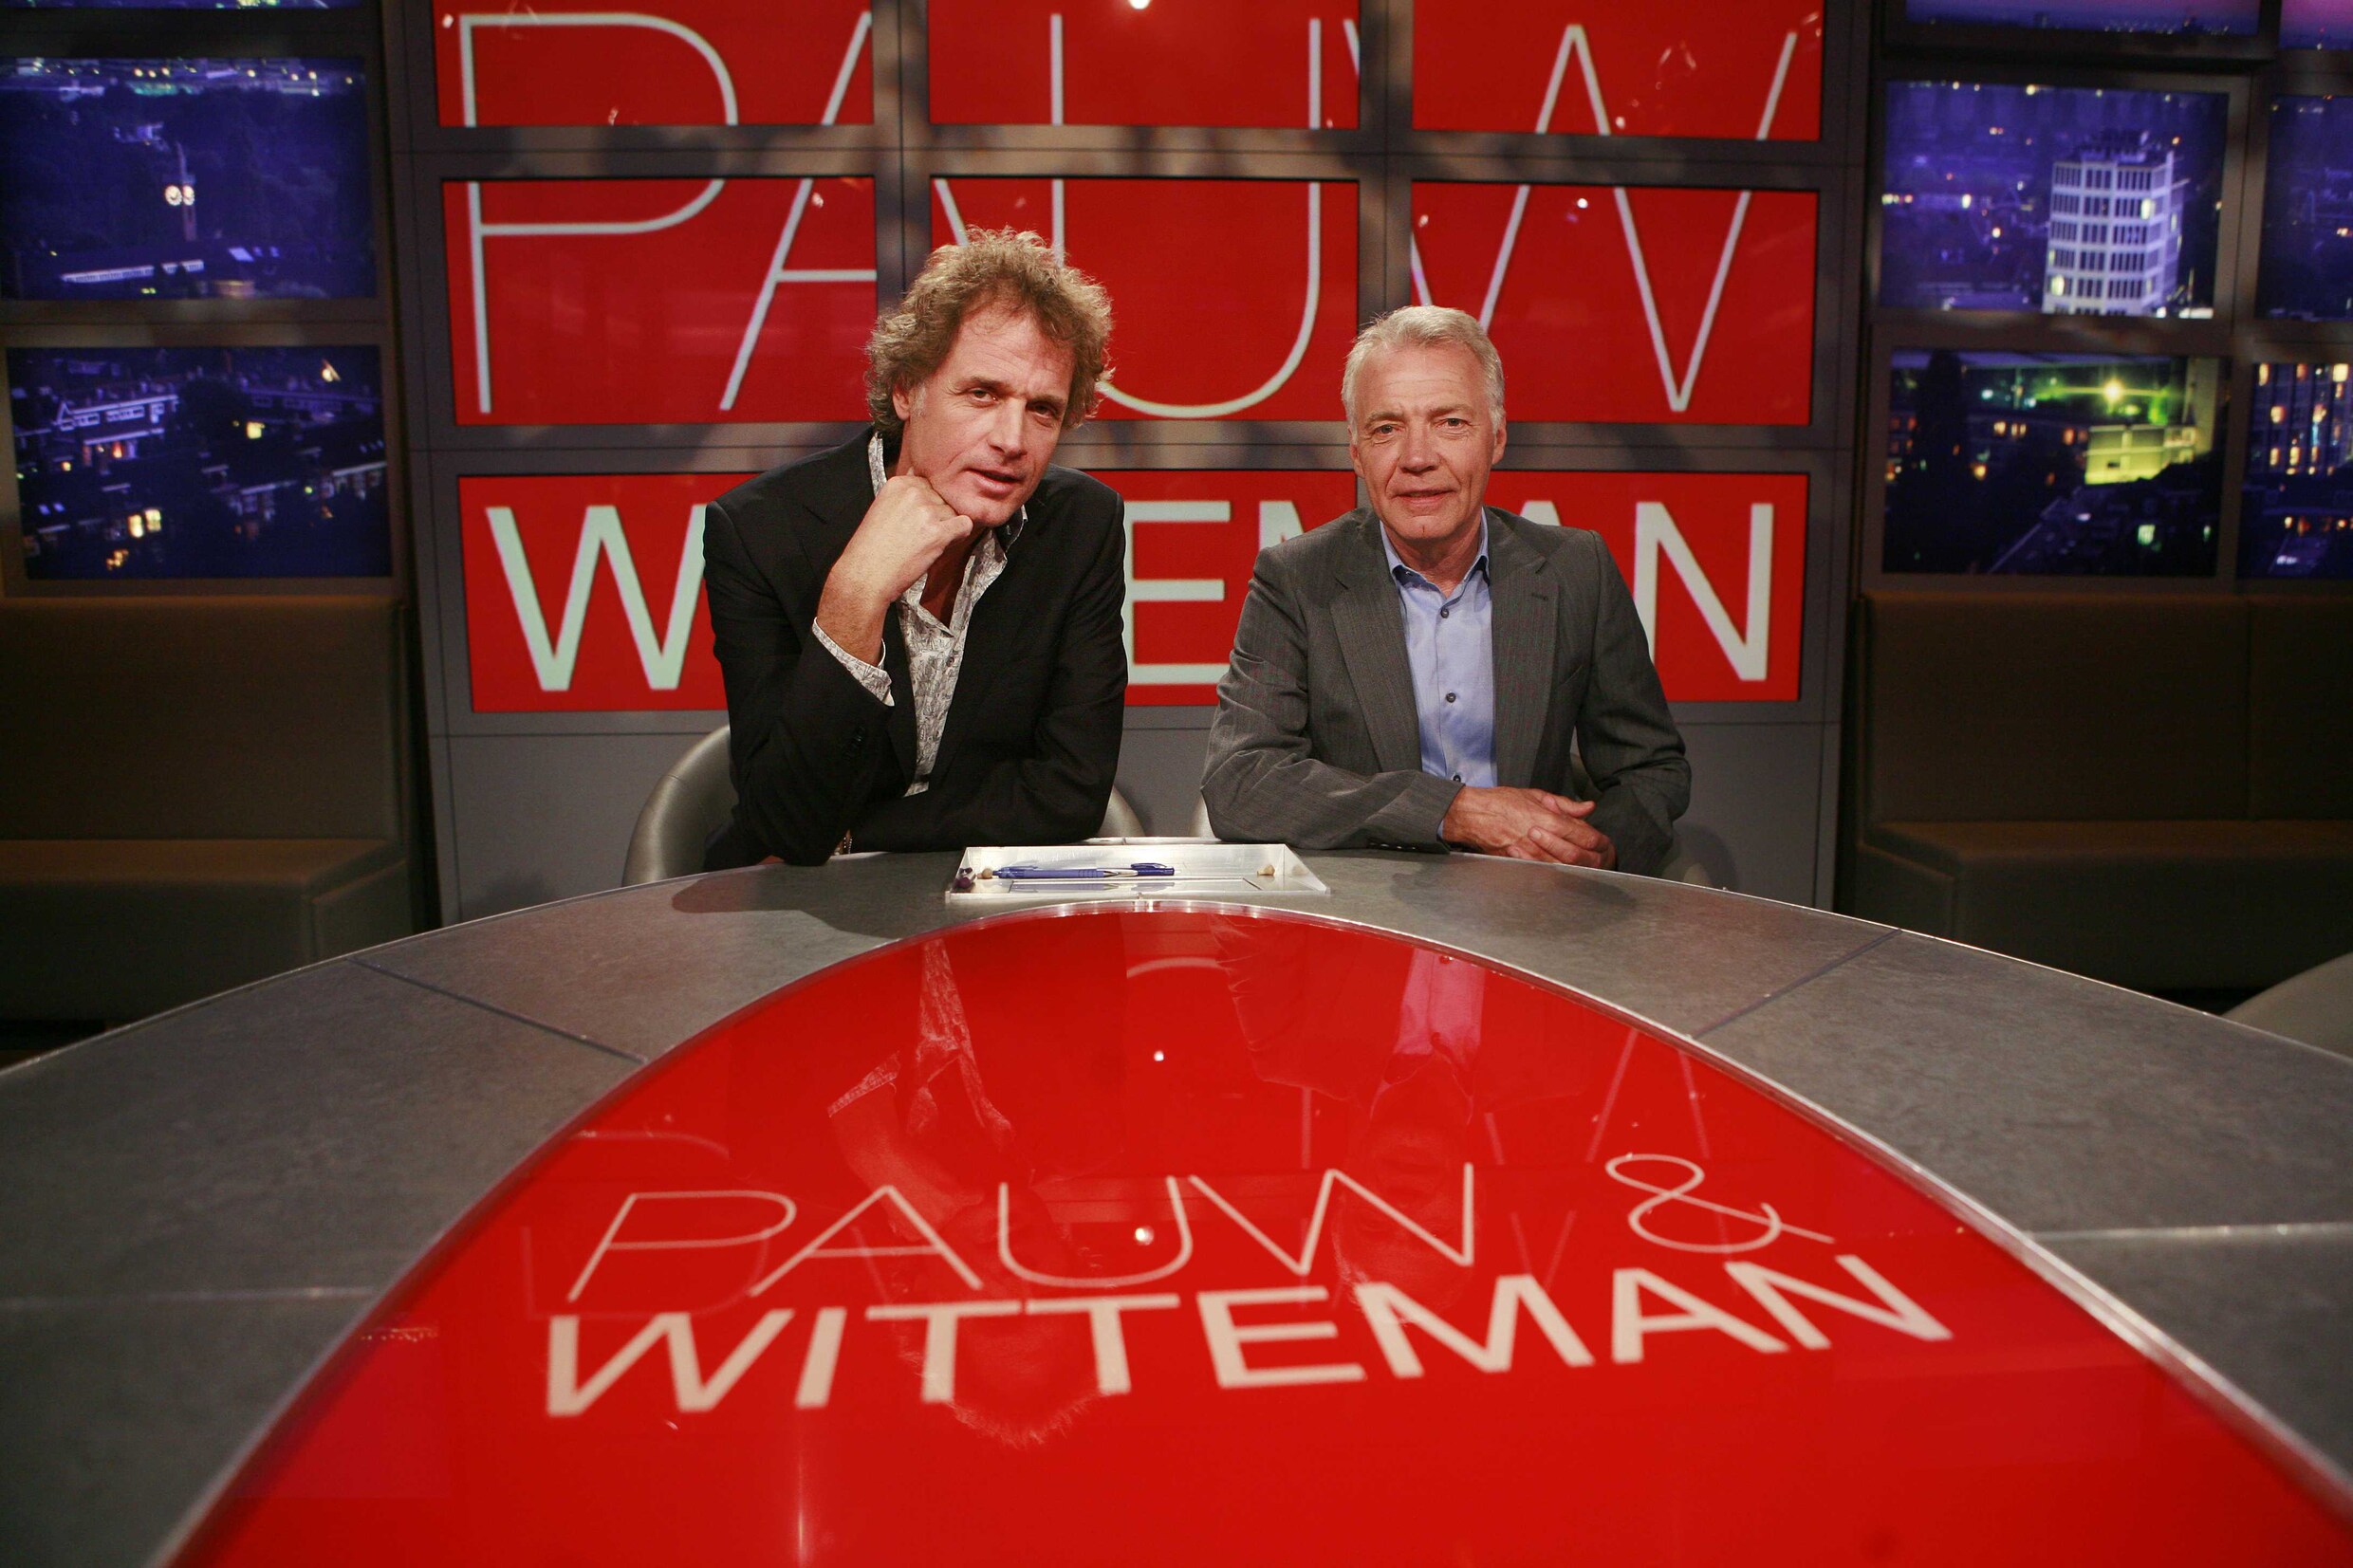 Pauw &amp; Witteman stopt onverwacht; Jeroen Pauw wel door met latenightshow